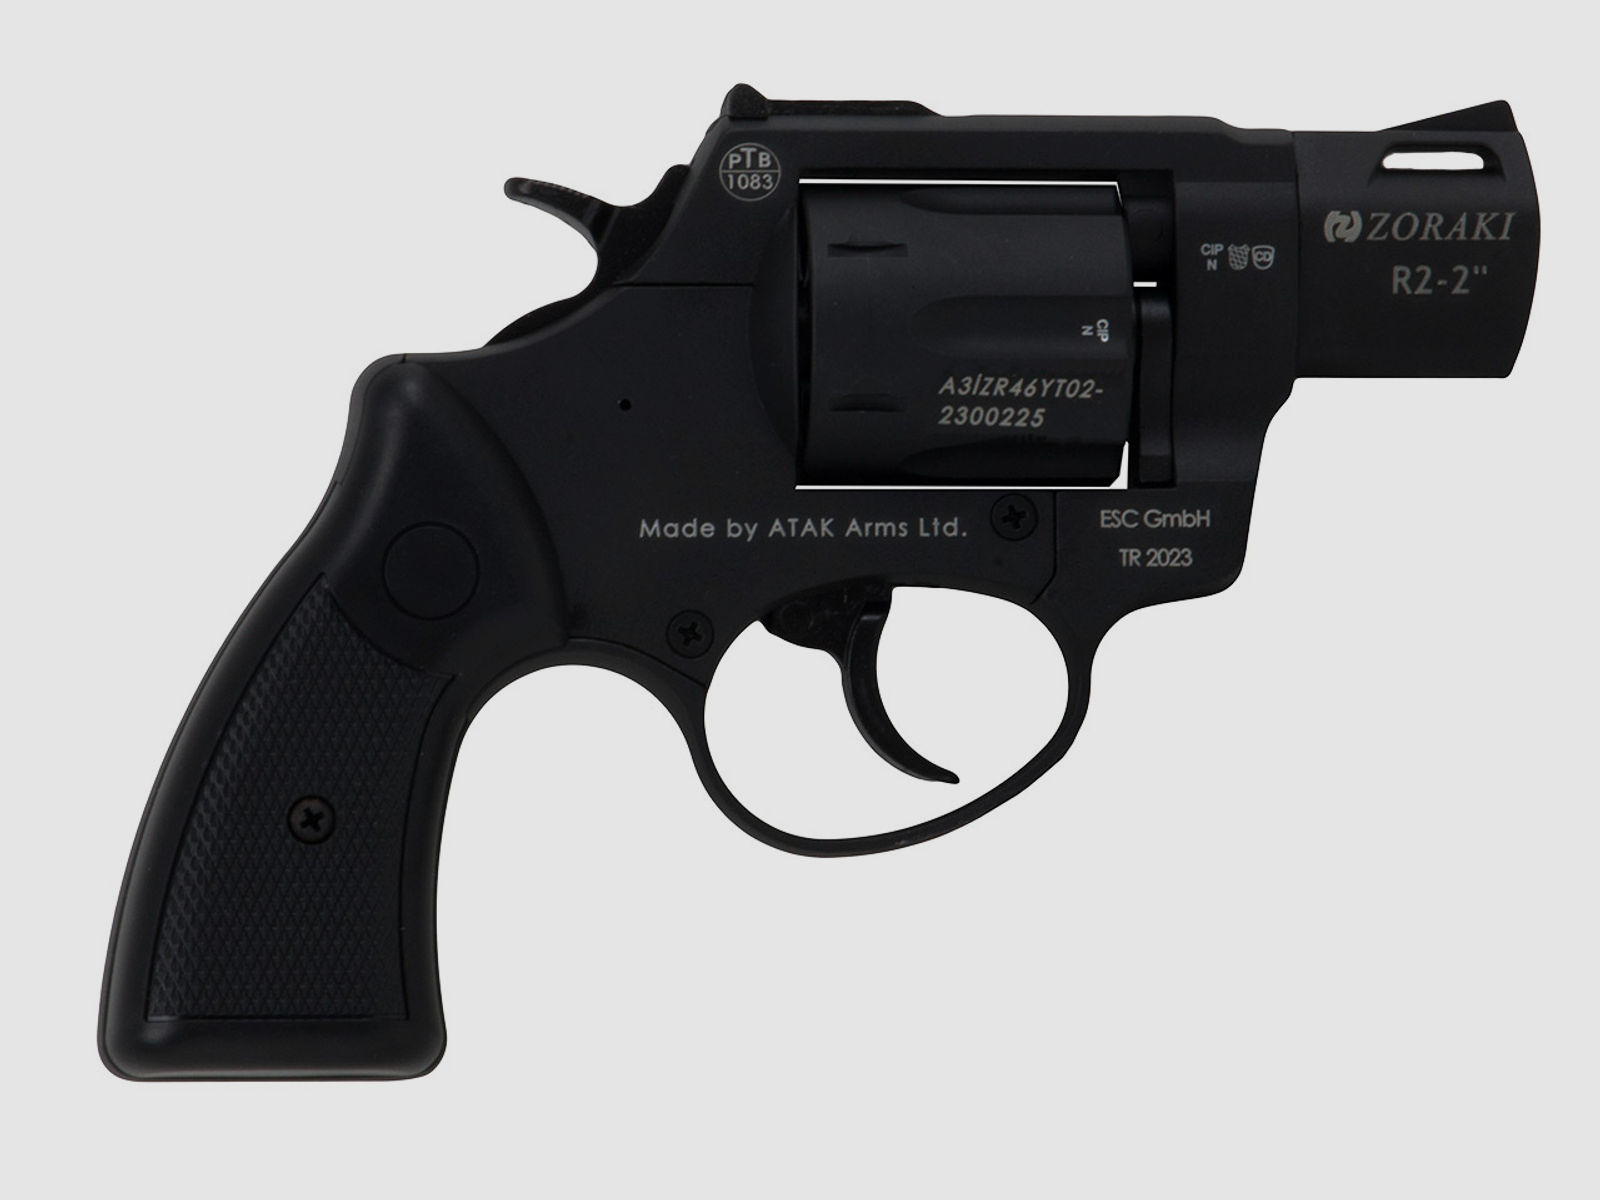 Schreckschuss Revolver Zoraki R2 Black 2 Zoll PTB 1083 Kaliber 9 mm R.K. (P18) + 50 Schuss